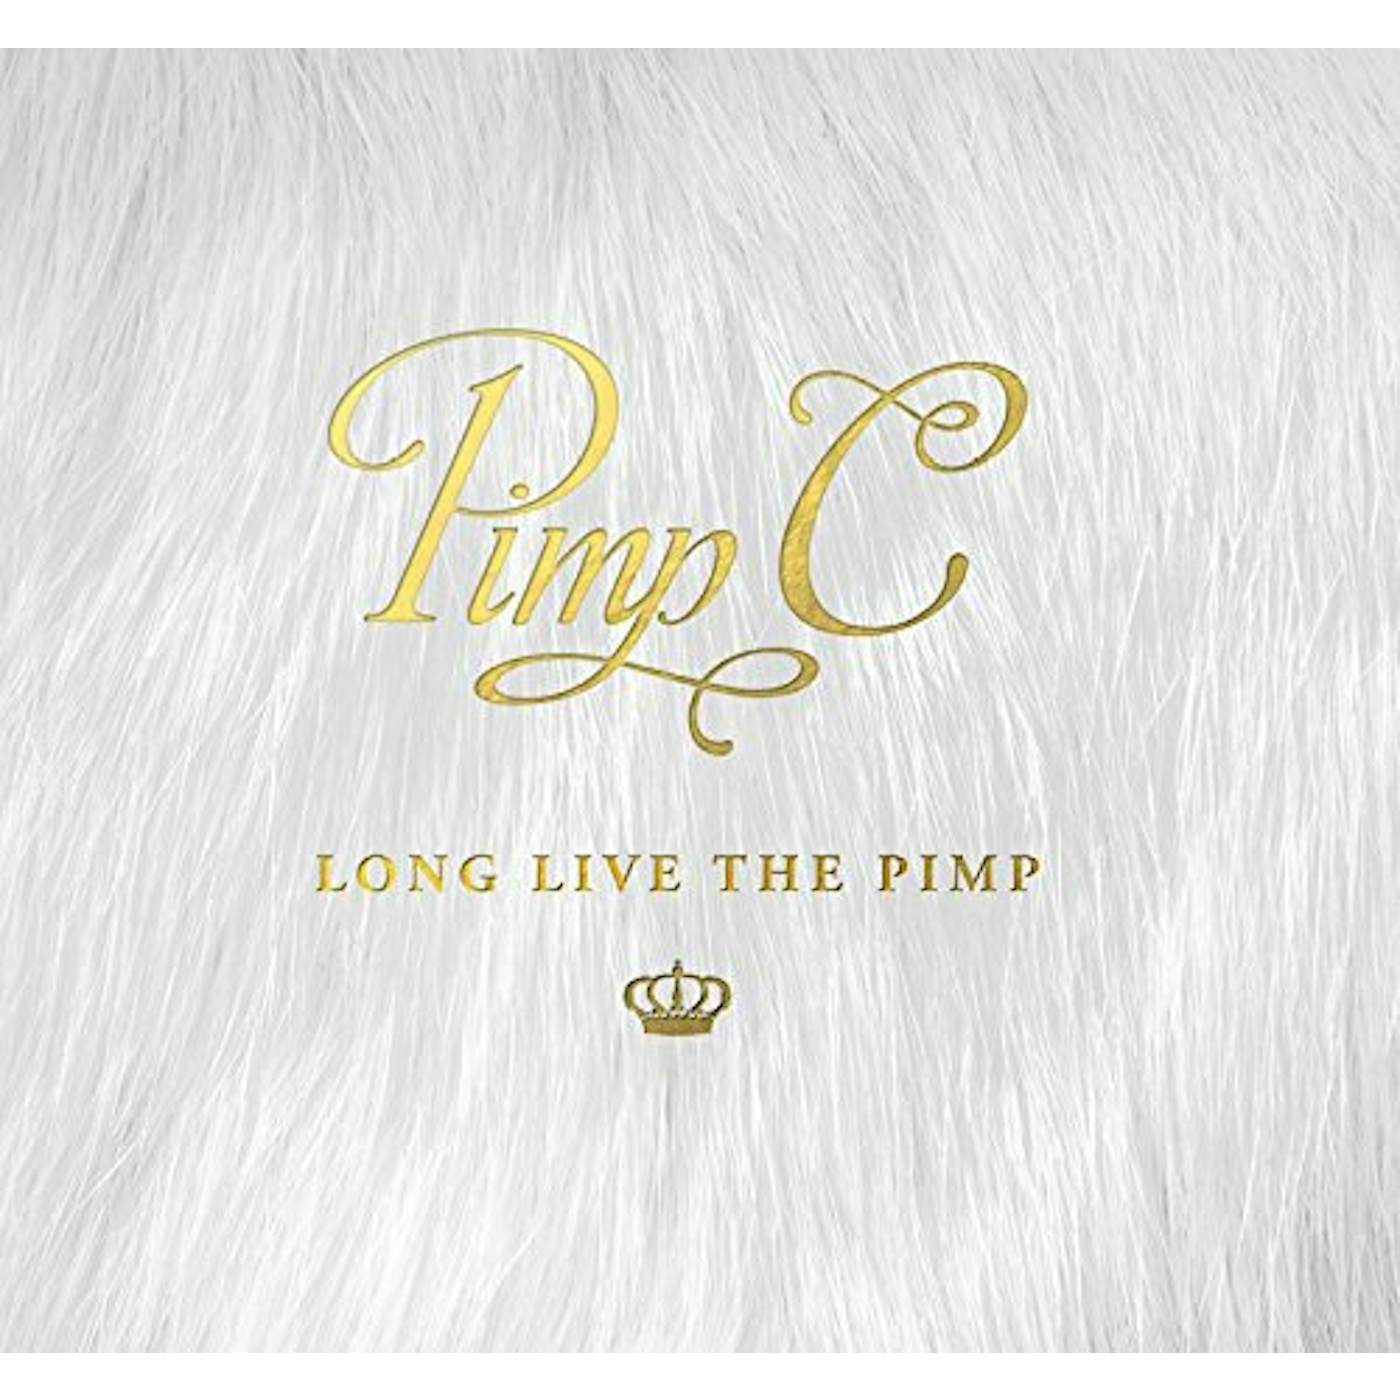 LONG LIVE THE PIMP CD